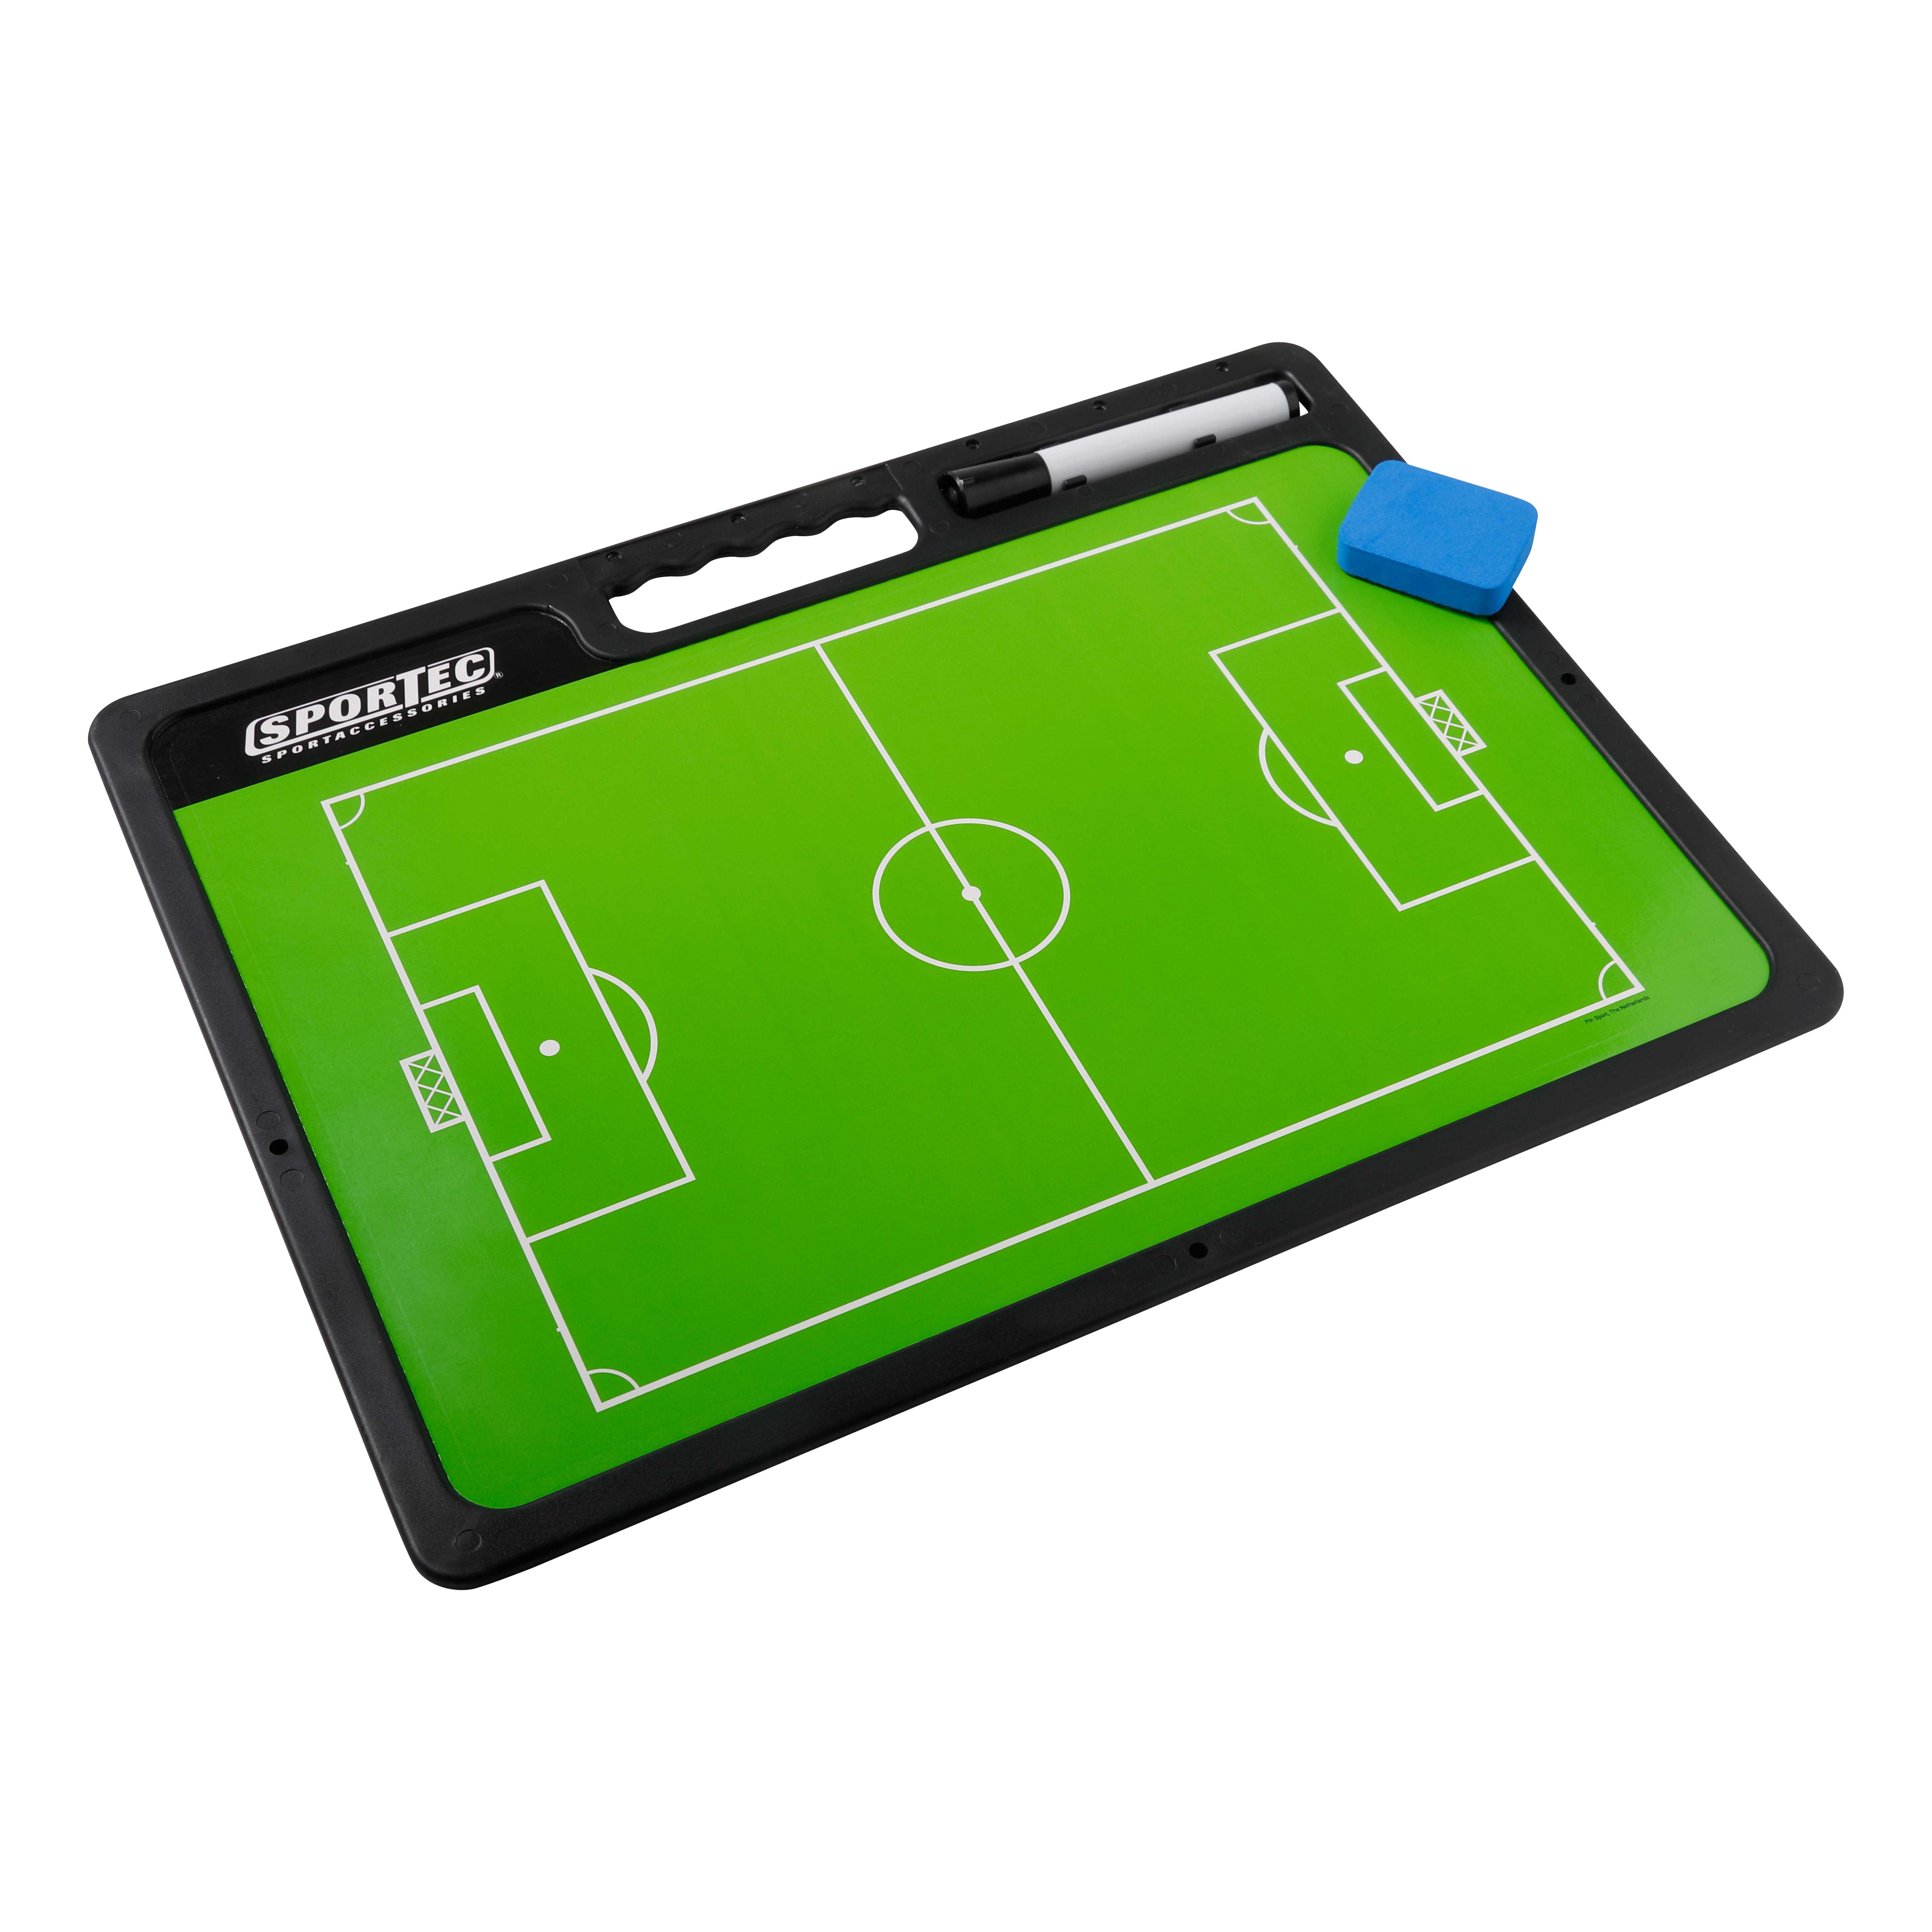 Sportec Coachbord Pro met handgreep - Voetbal